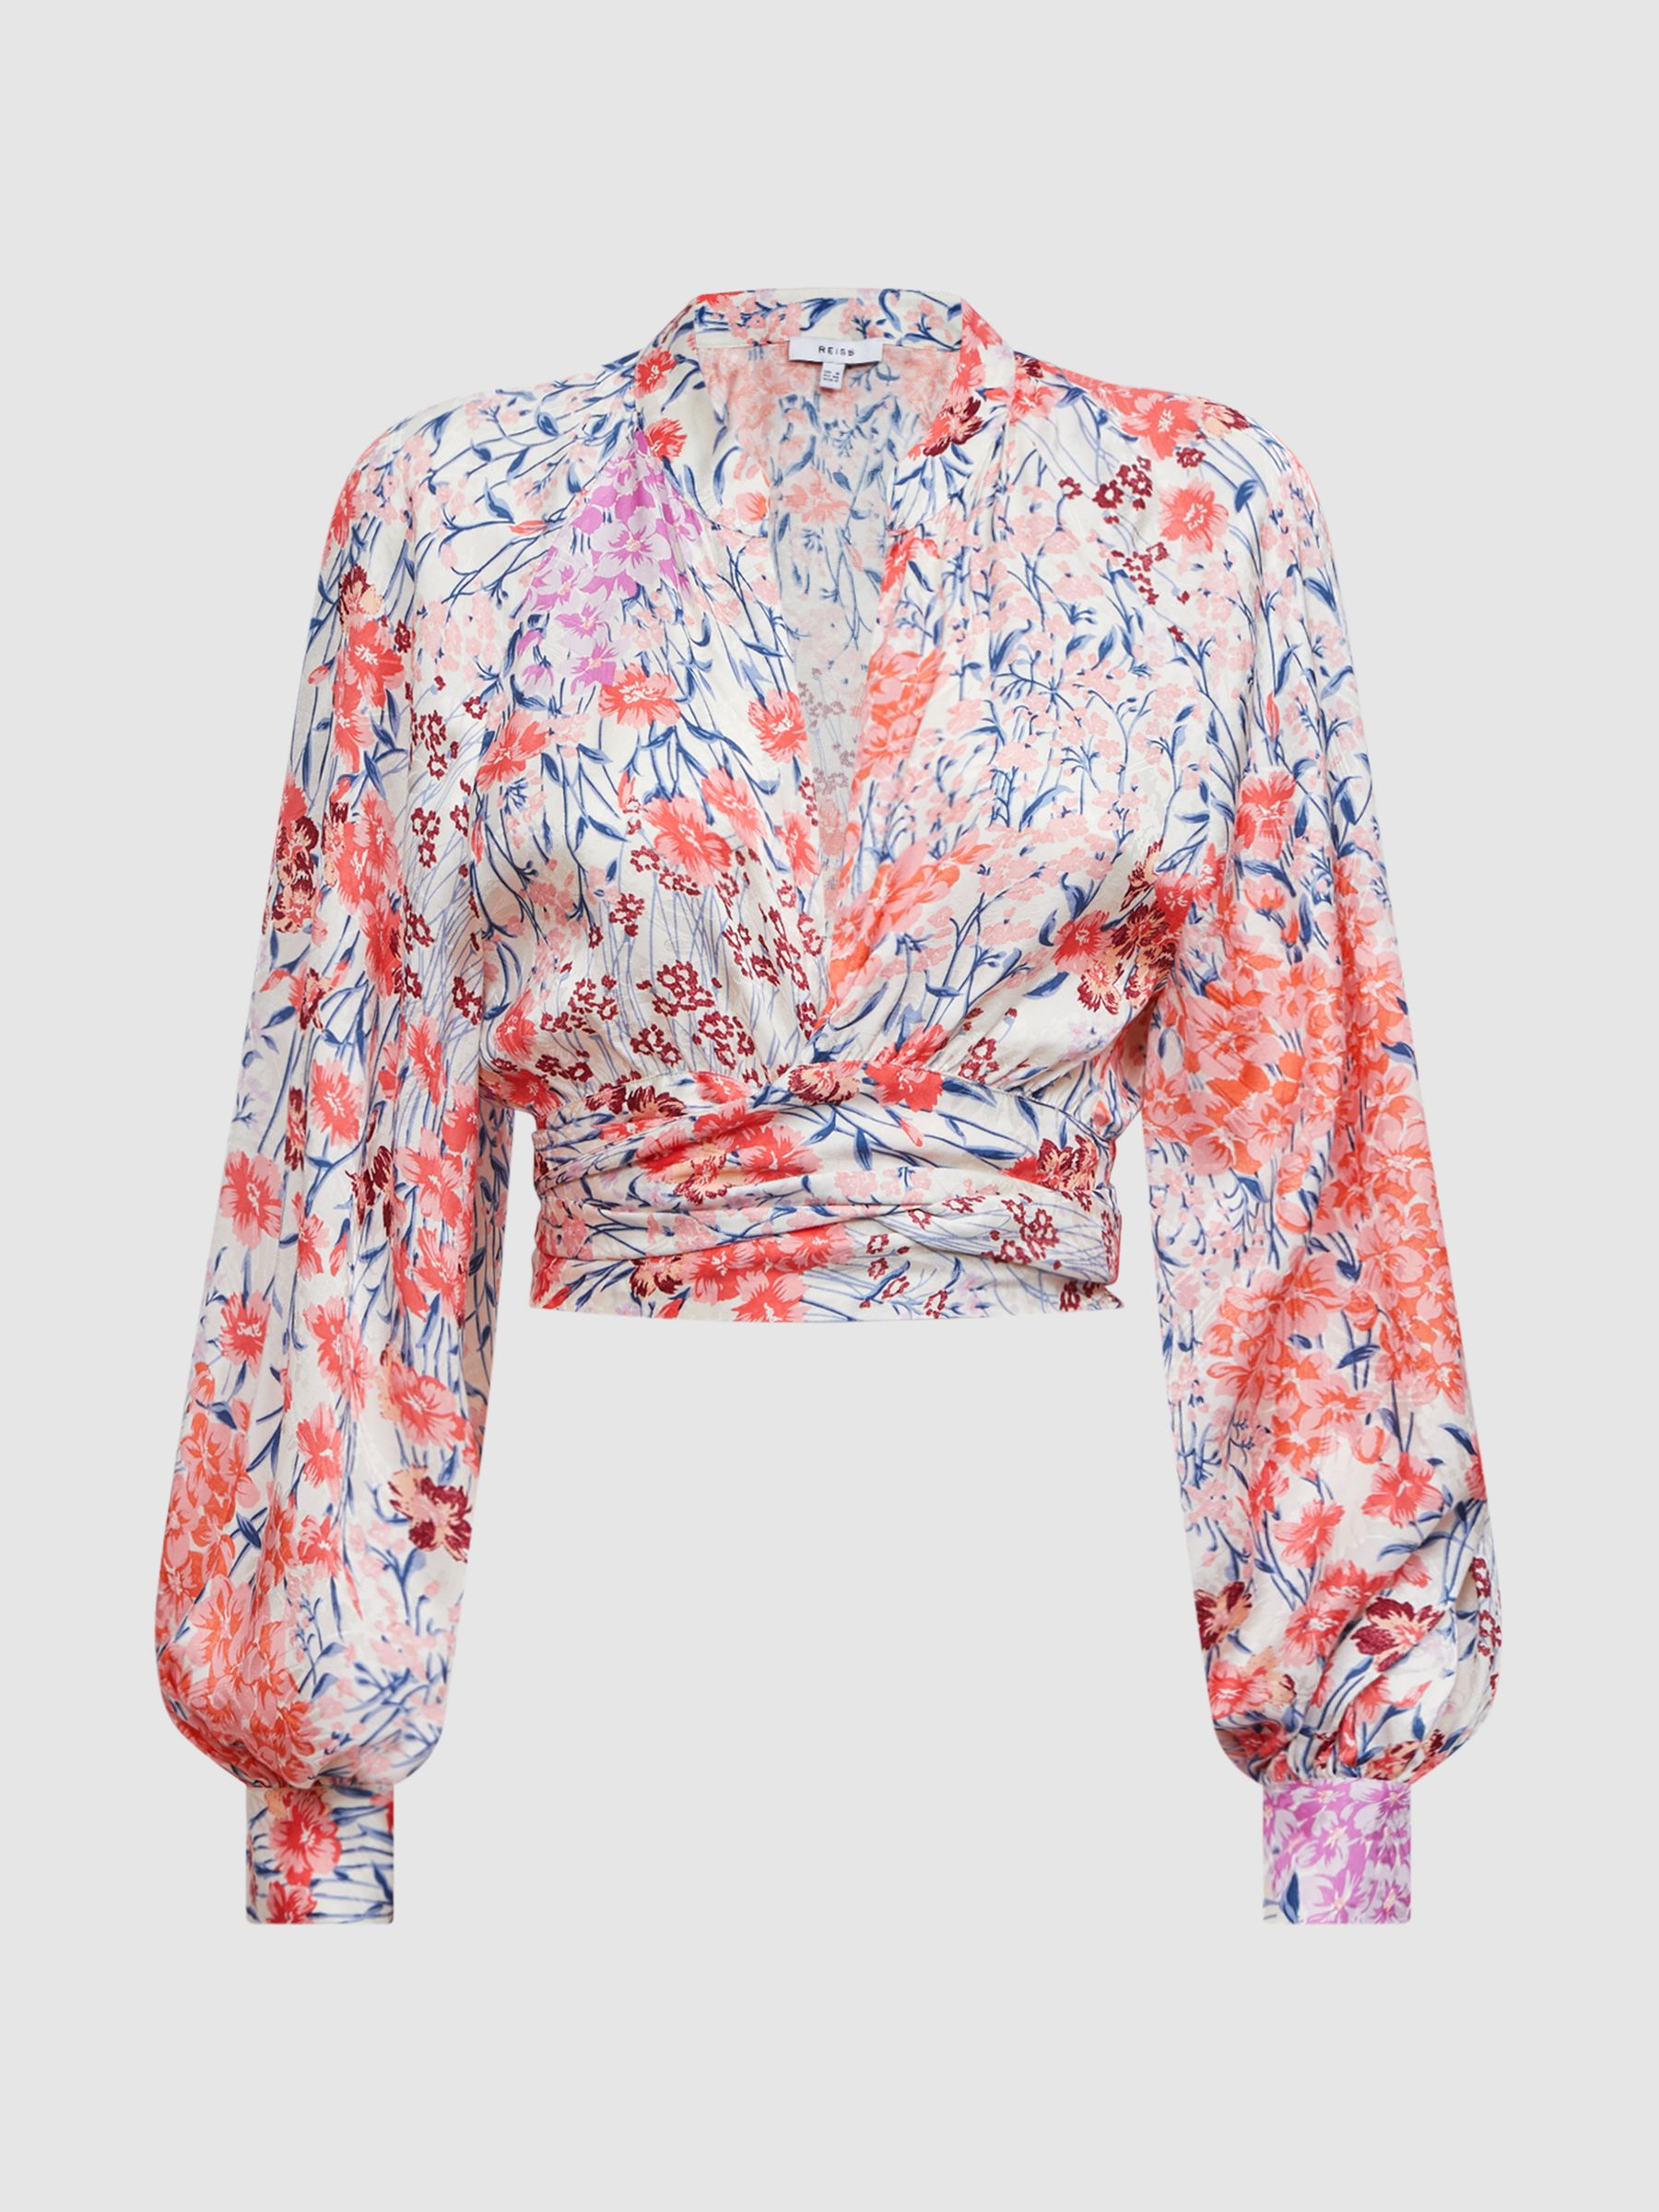 Reiss Elle Floral Print Tie Front Cropped Blouse | REISS Australia